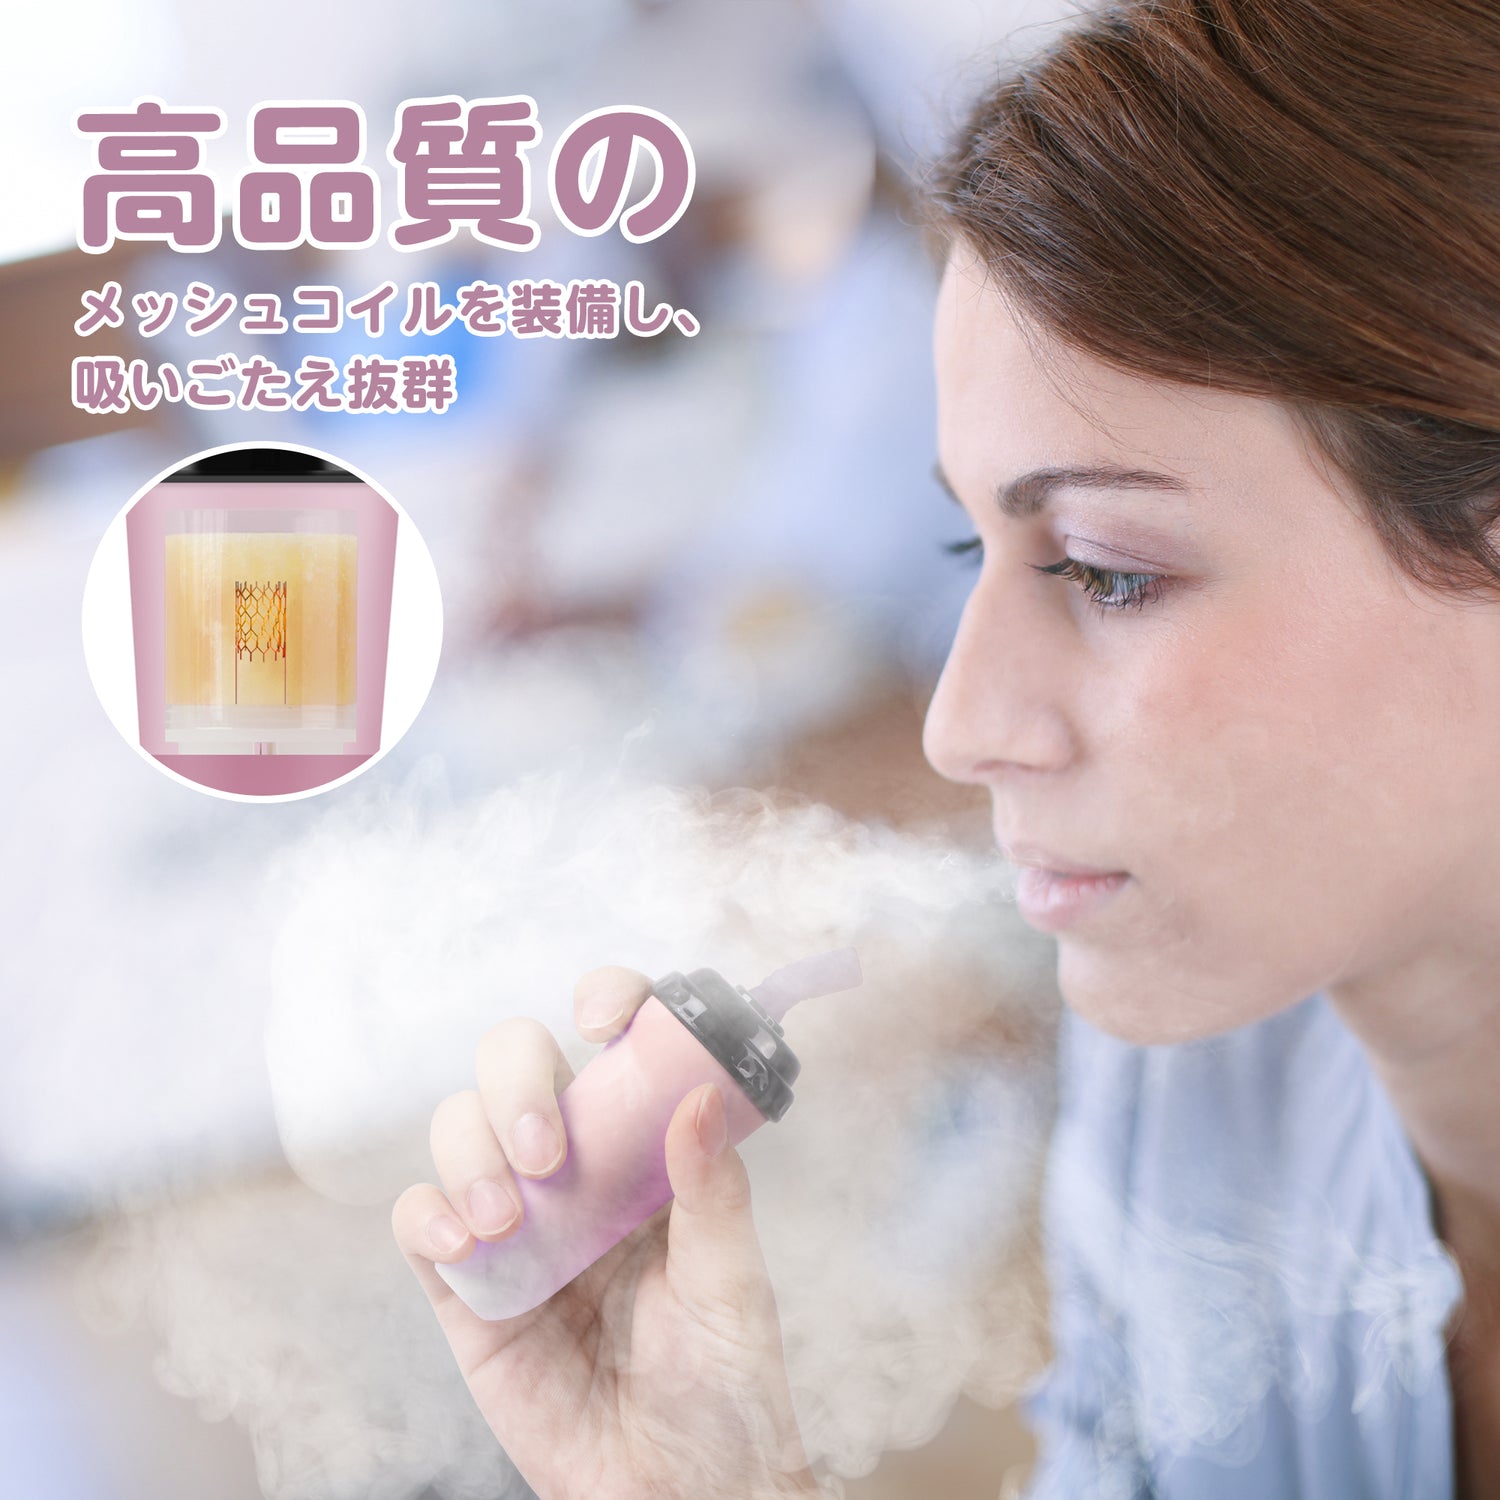 Die branchenweit erste elektronische Zigarette im Minicup-Format, Einwegartikel, kann etwa 5.000 Mal inhaliert werden, Nikotin/Teer NULL, Raucherentwöhnungshilfe MIX-1